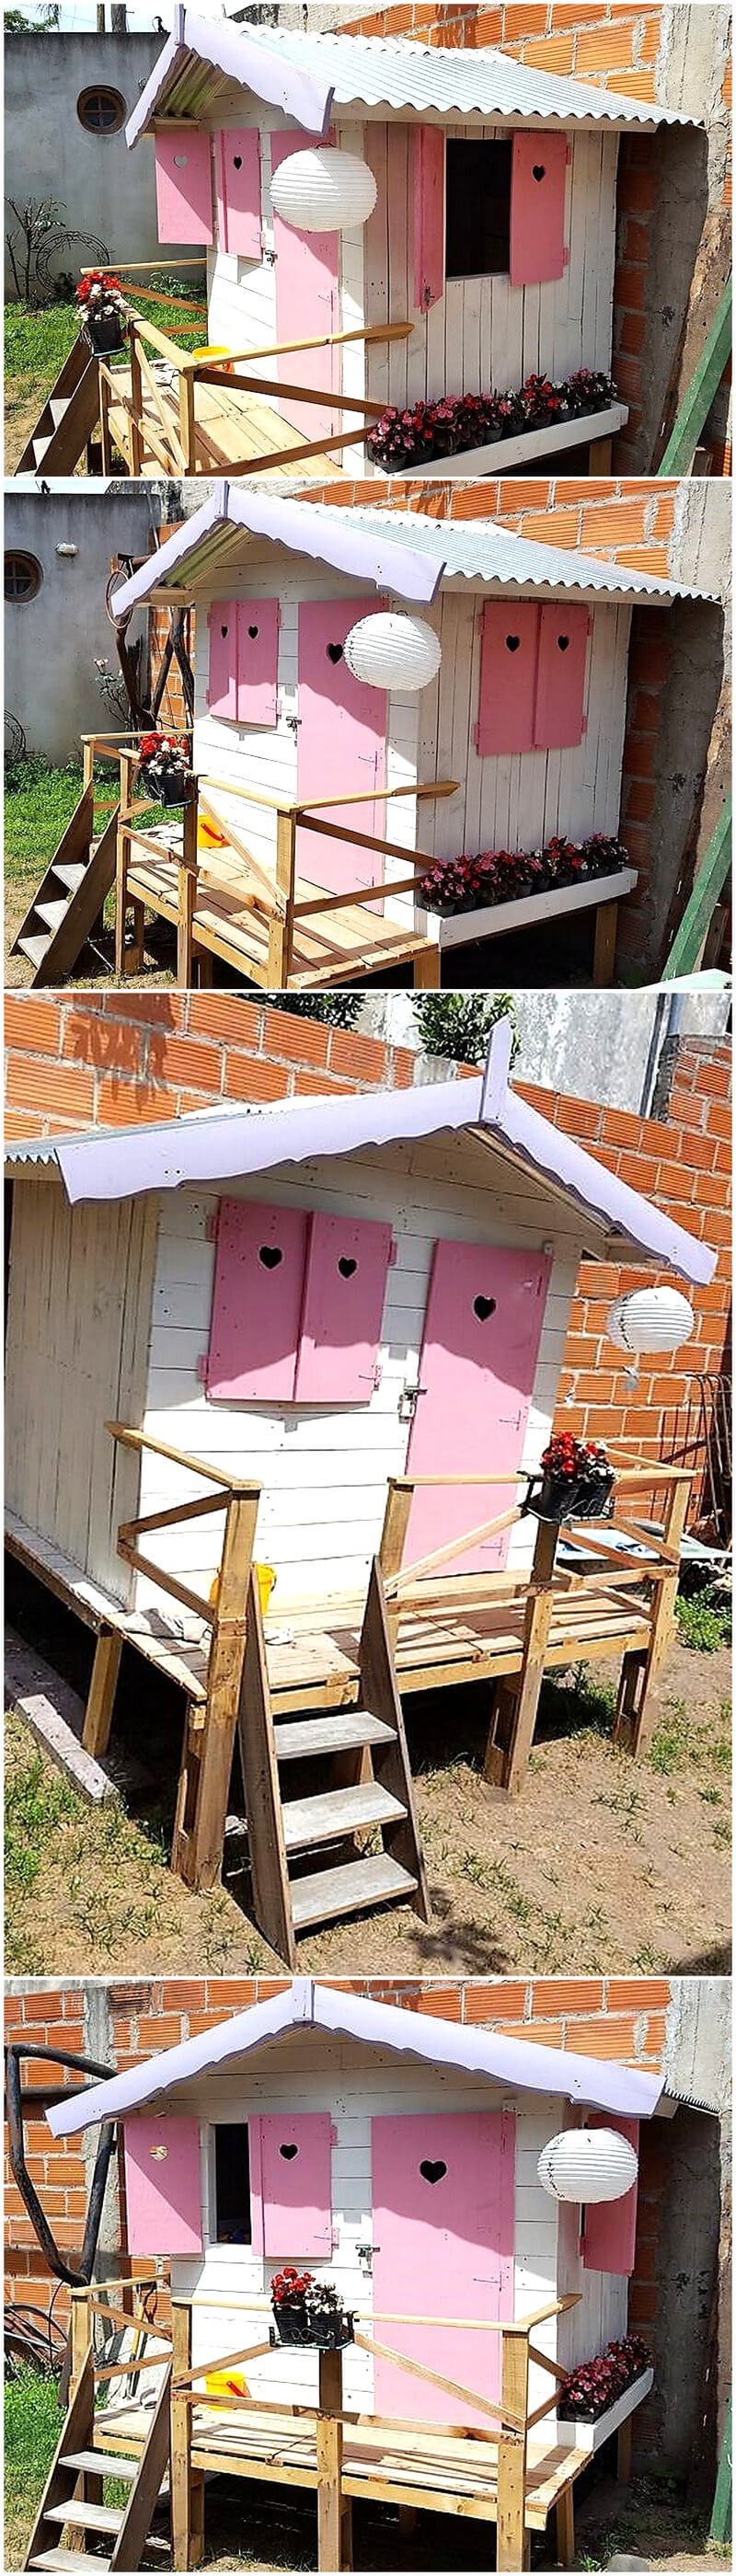 reused pallets kids playhouse